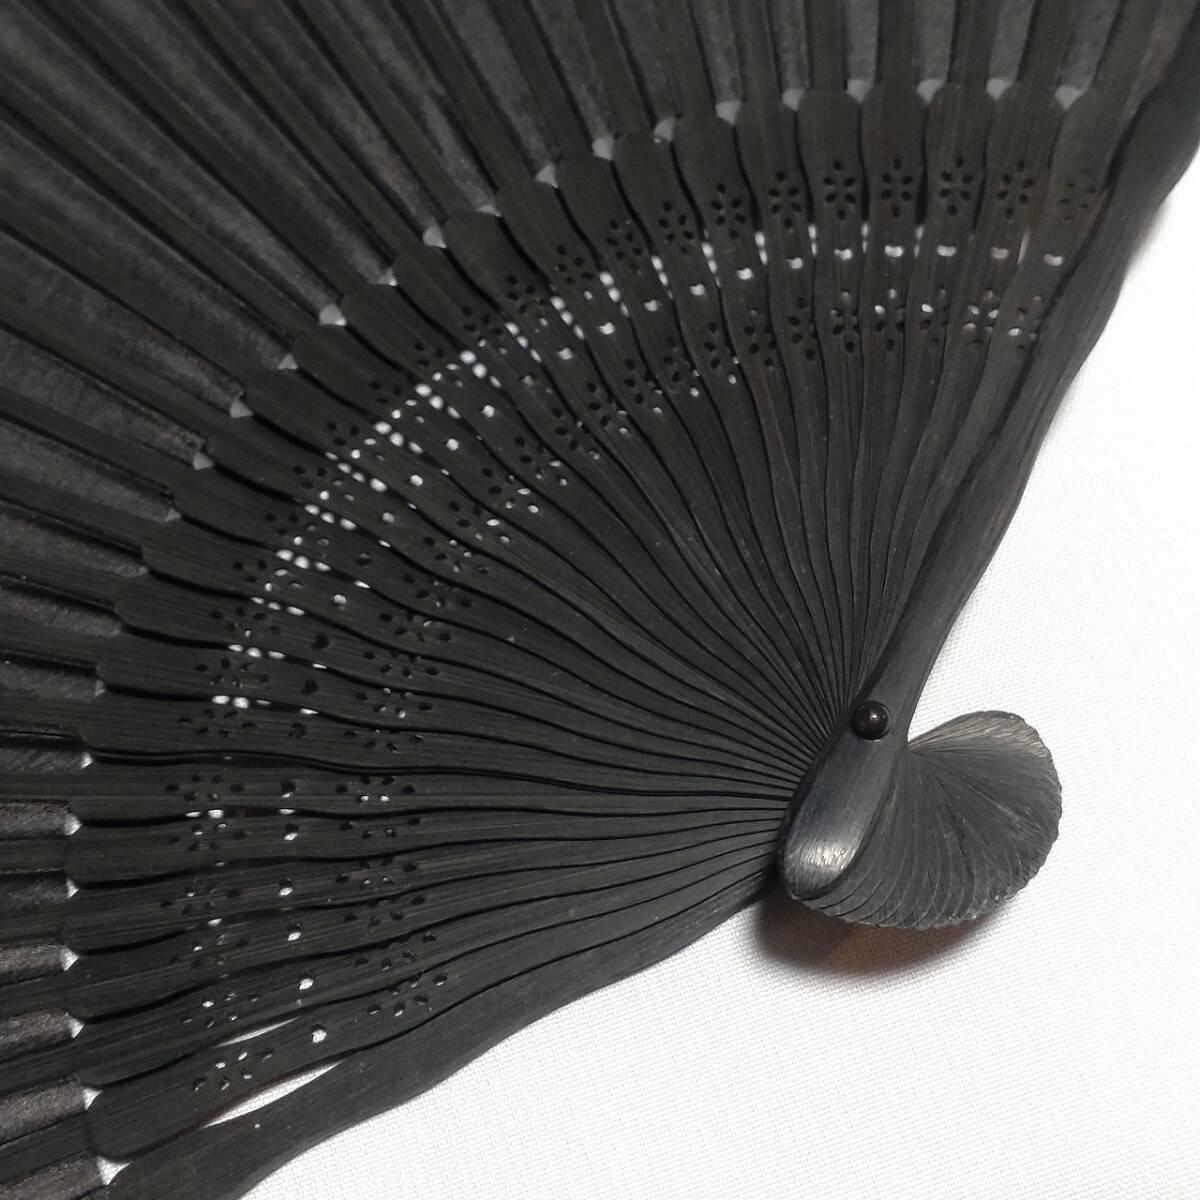  шёлк  складной веер   ткань   складной веер   черный  цвет  ...    ... ...  общая длина   около 220㎜ ... складной веер  ...  чувство        ... ...  аксессуары  сделано в Японии  　【4300】　【b】